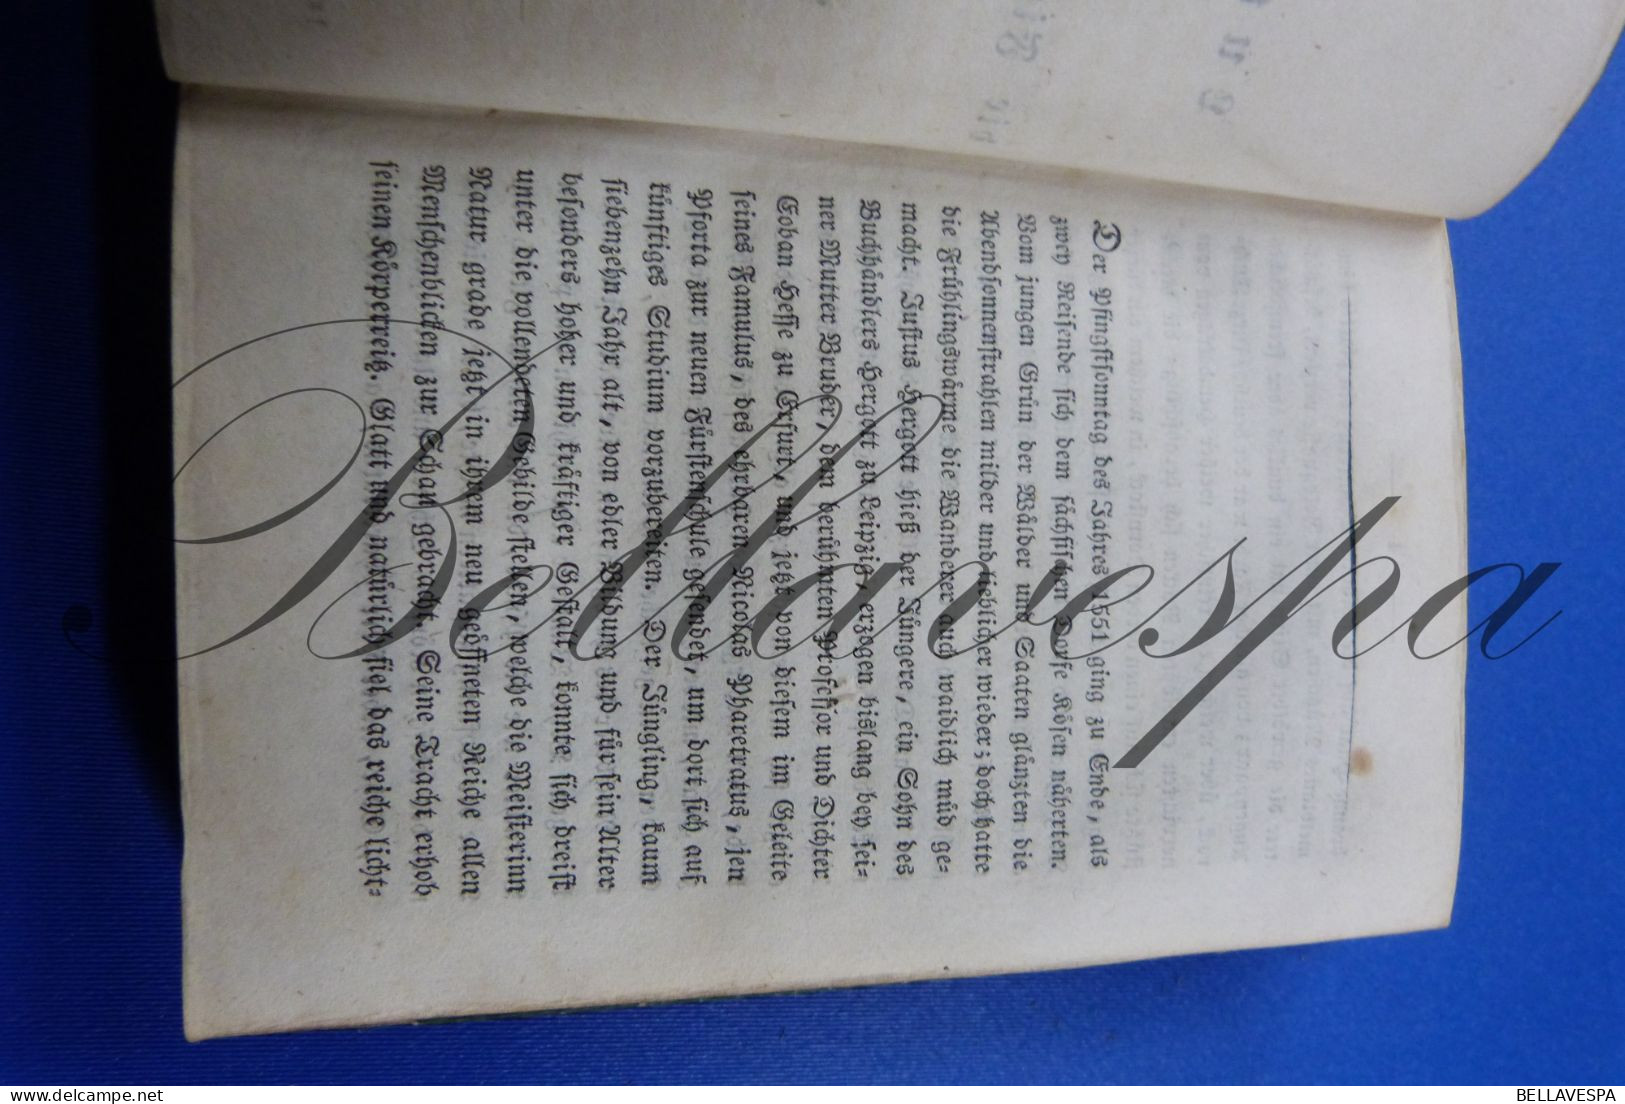 Orphea Taschenbuch -jahres 1824-   376 pages mit acht Kupher gravures nach H.Ramberg 1 jarhgang